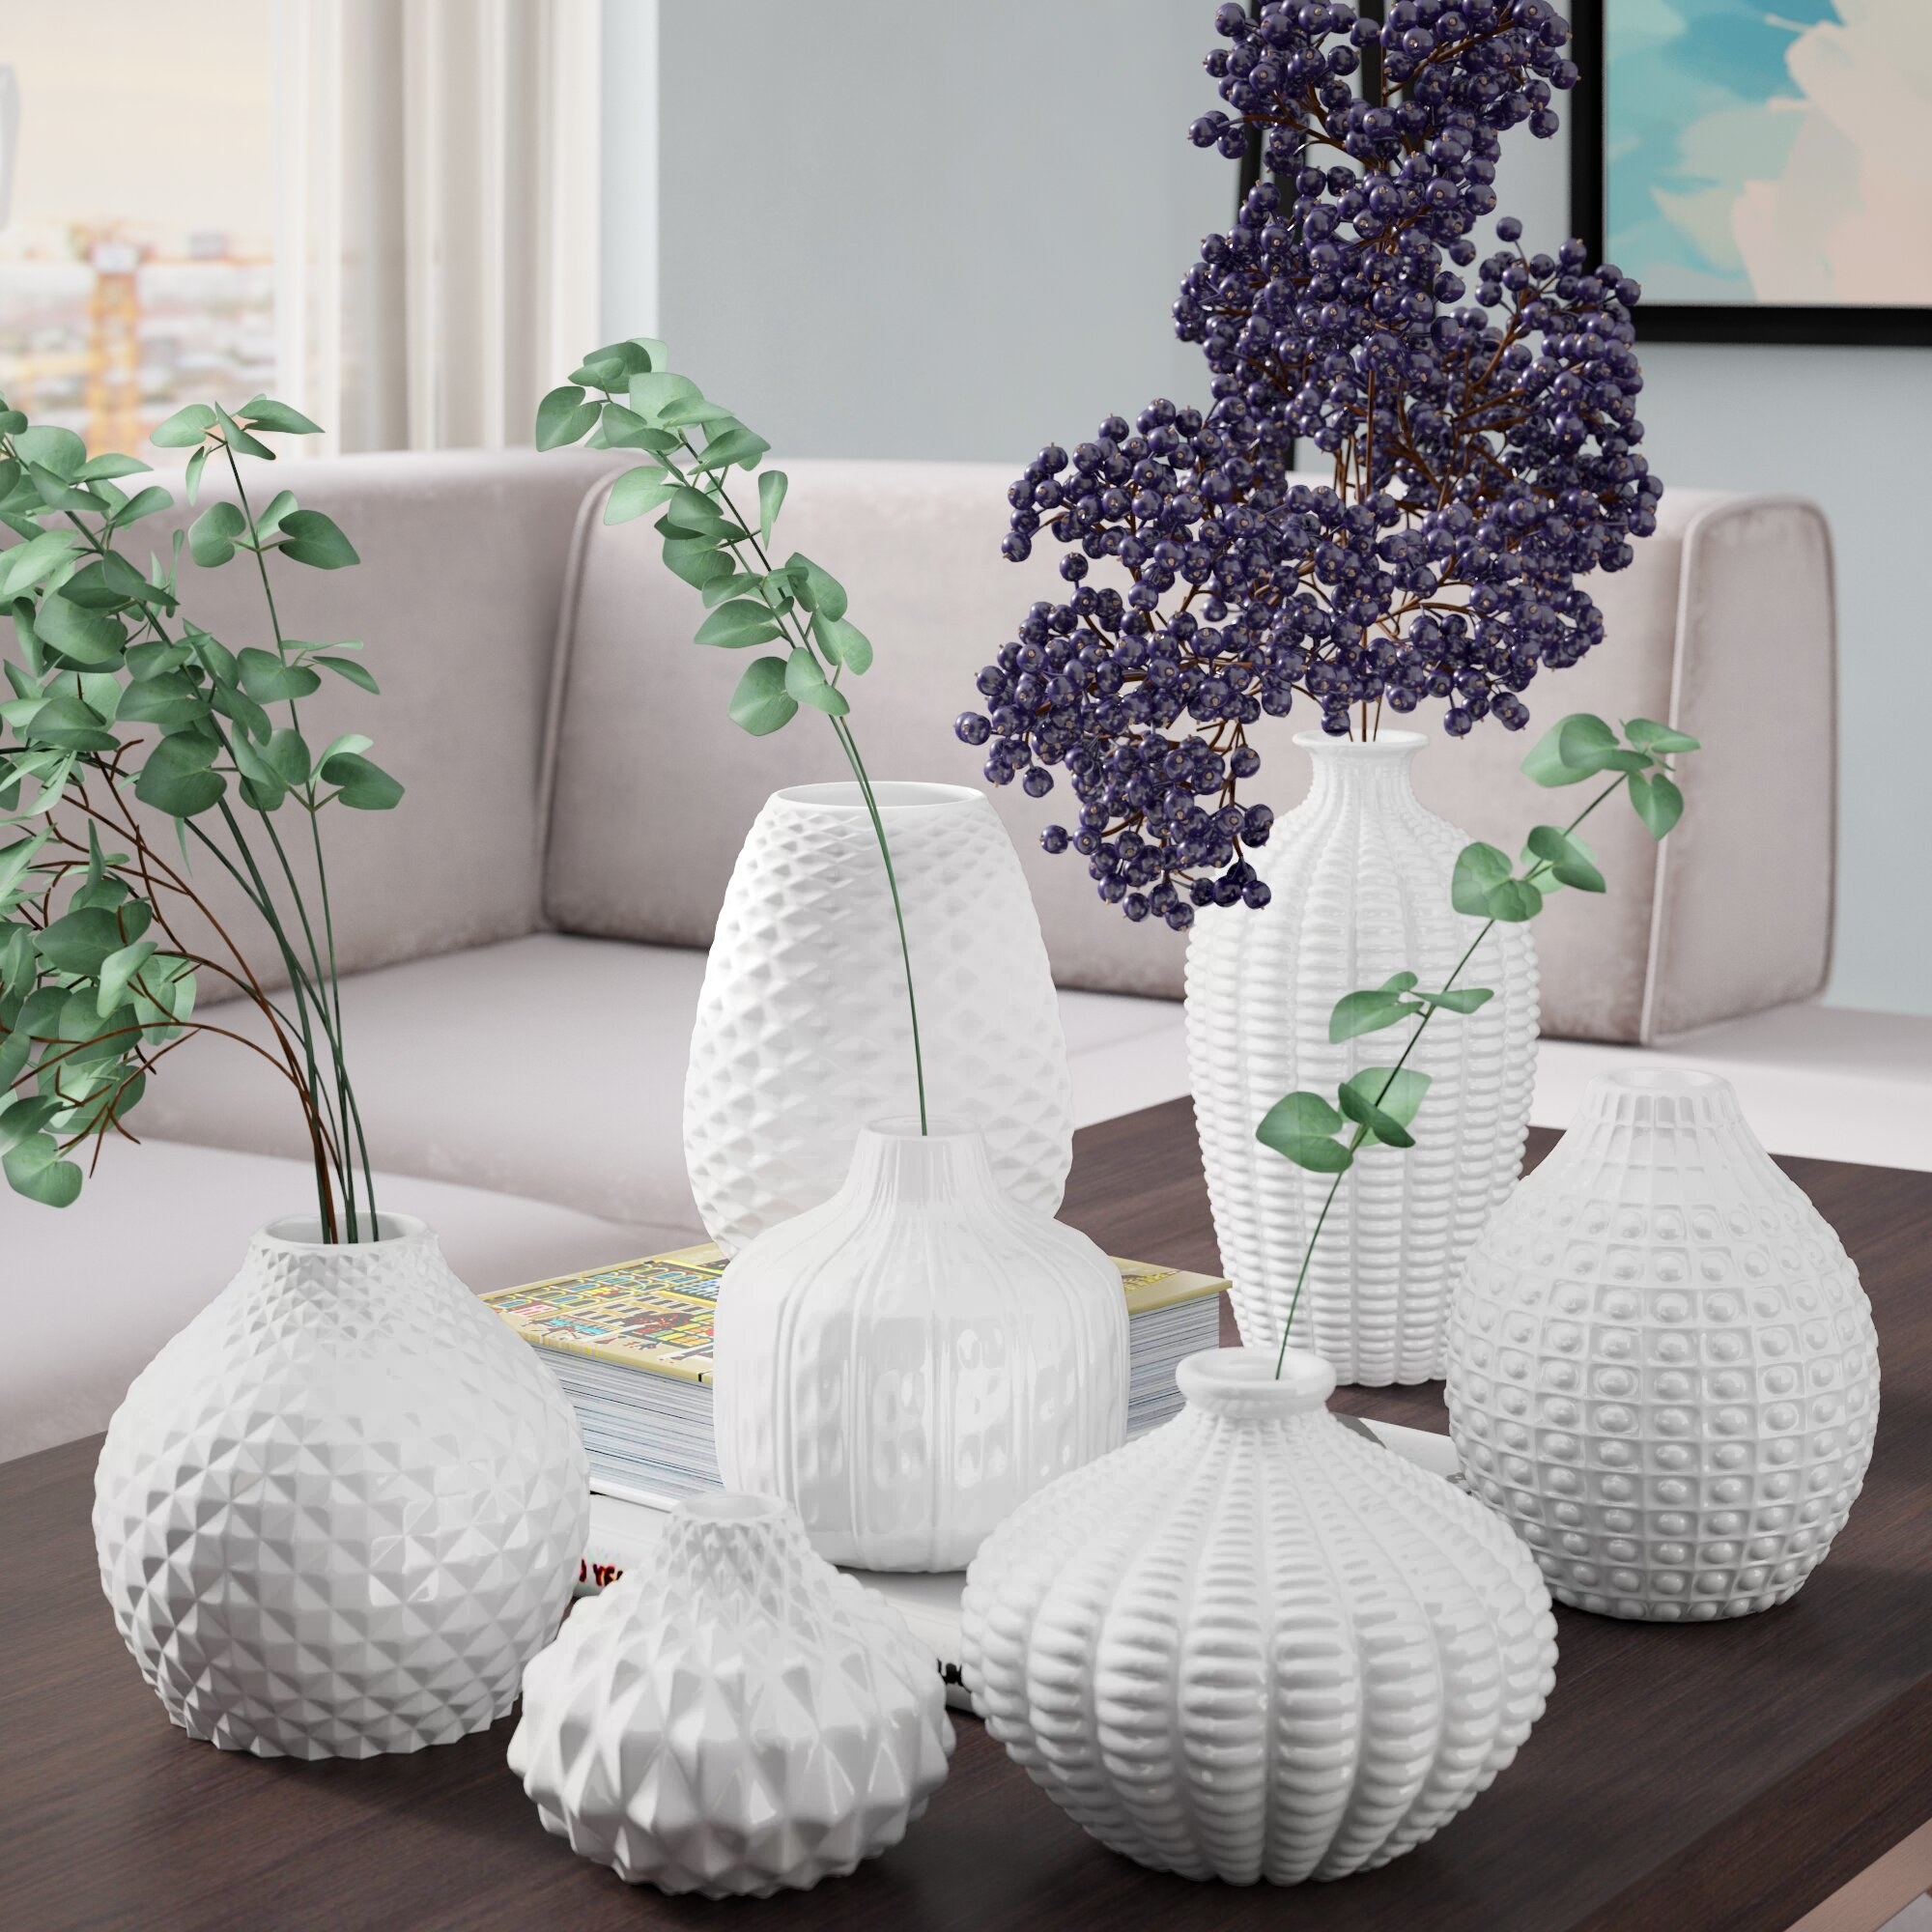 Vase set on coffee table